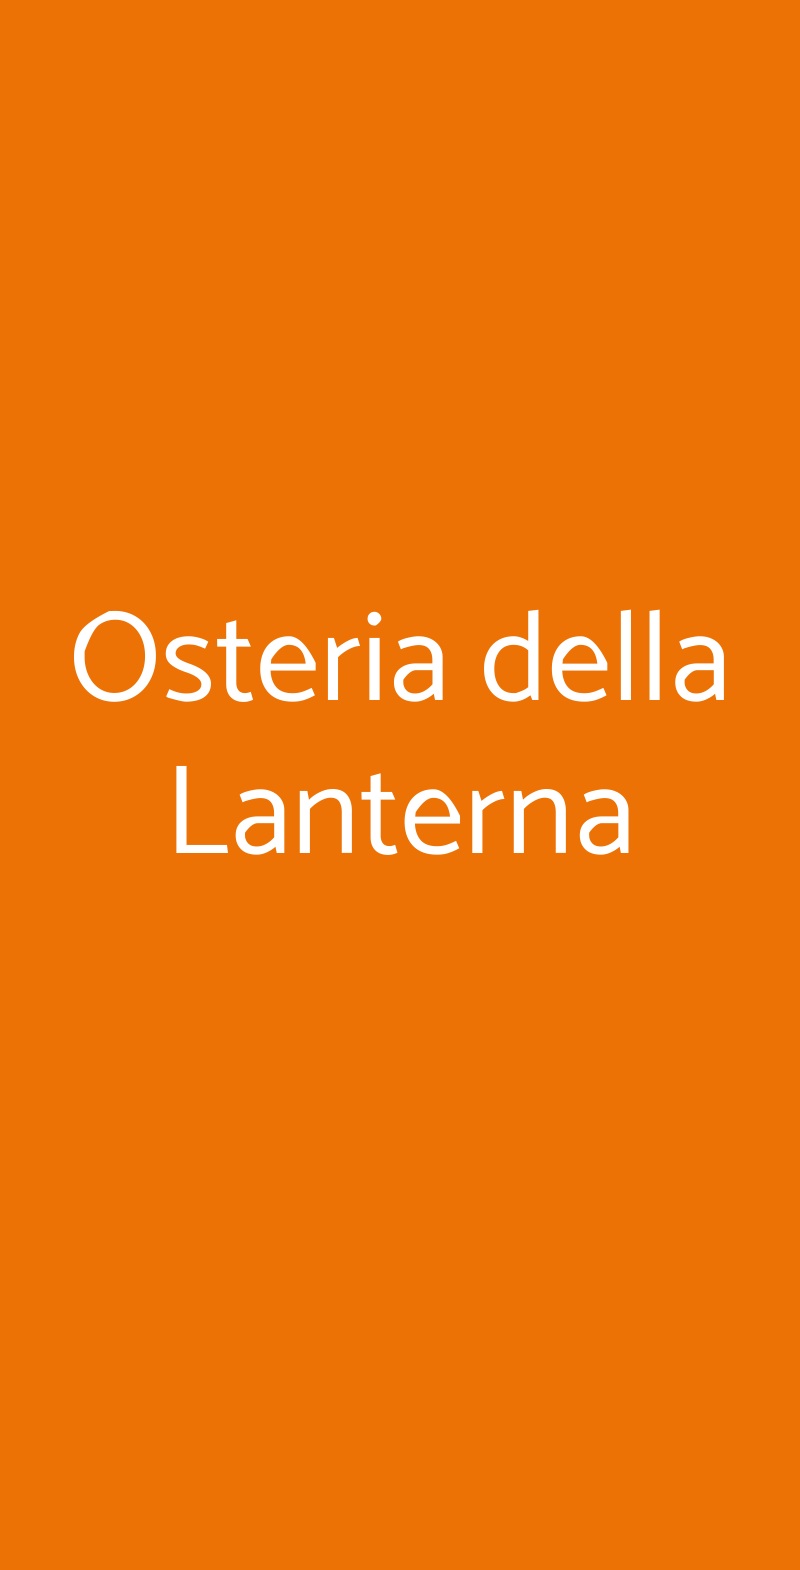 Osteria della Lanterna Bologna menù 1 pagina